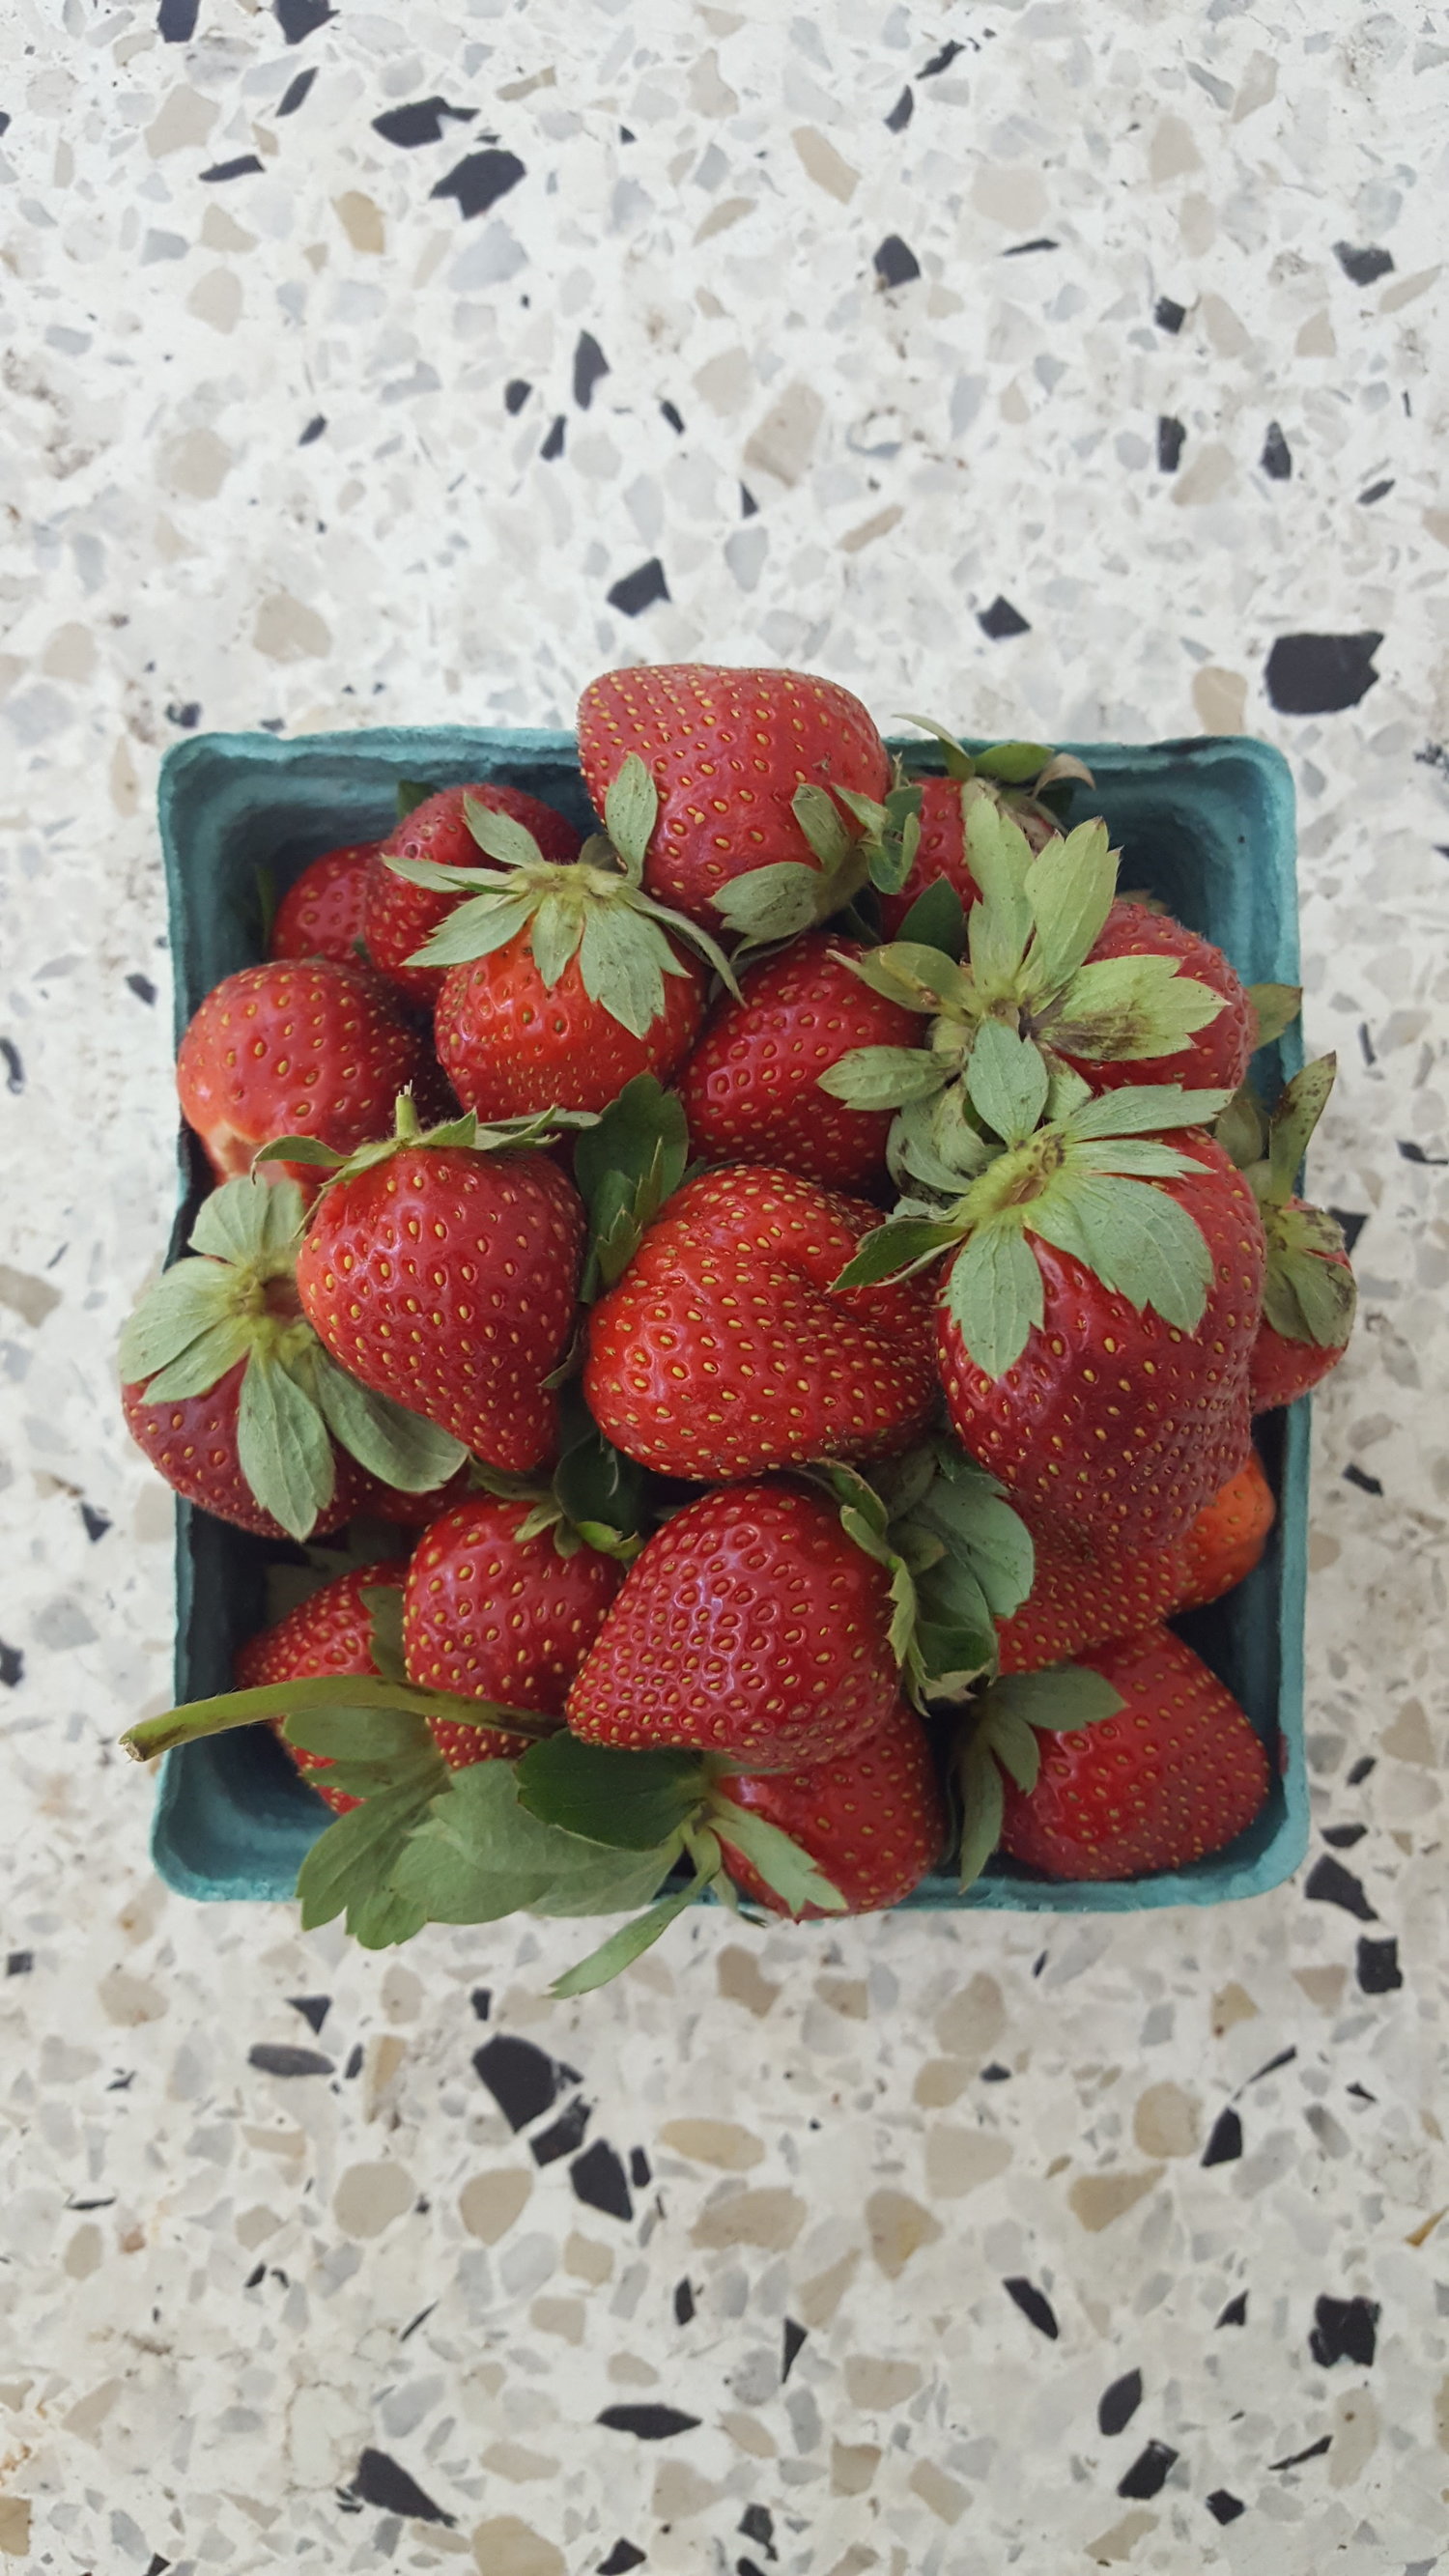 Heart Health Red Foods - Strawberries.jpg